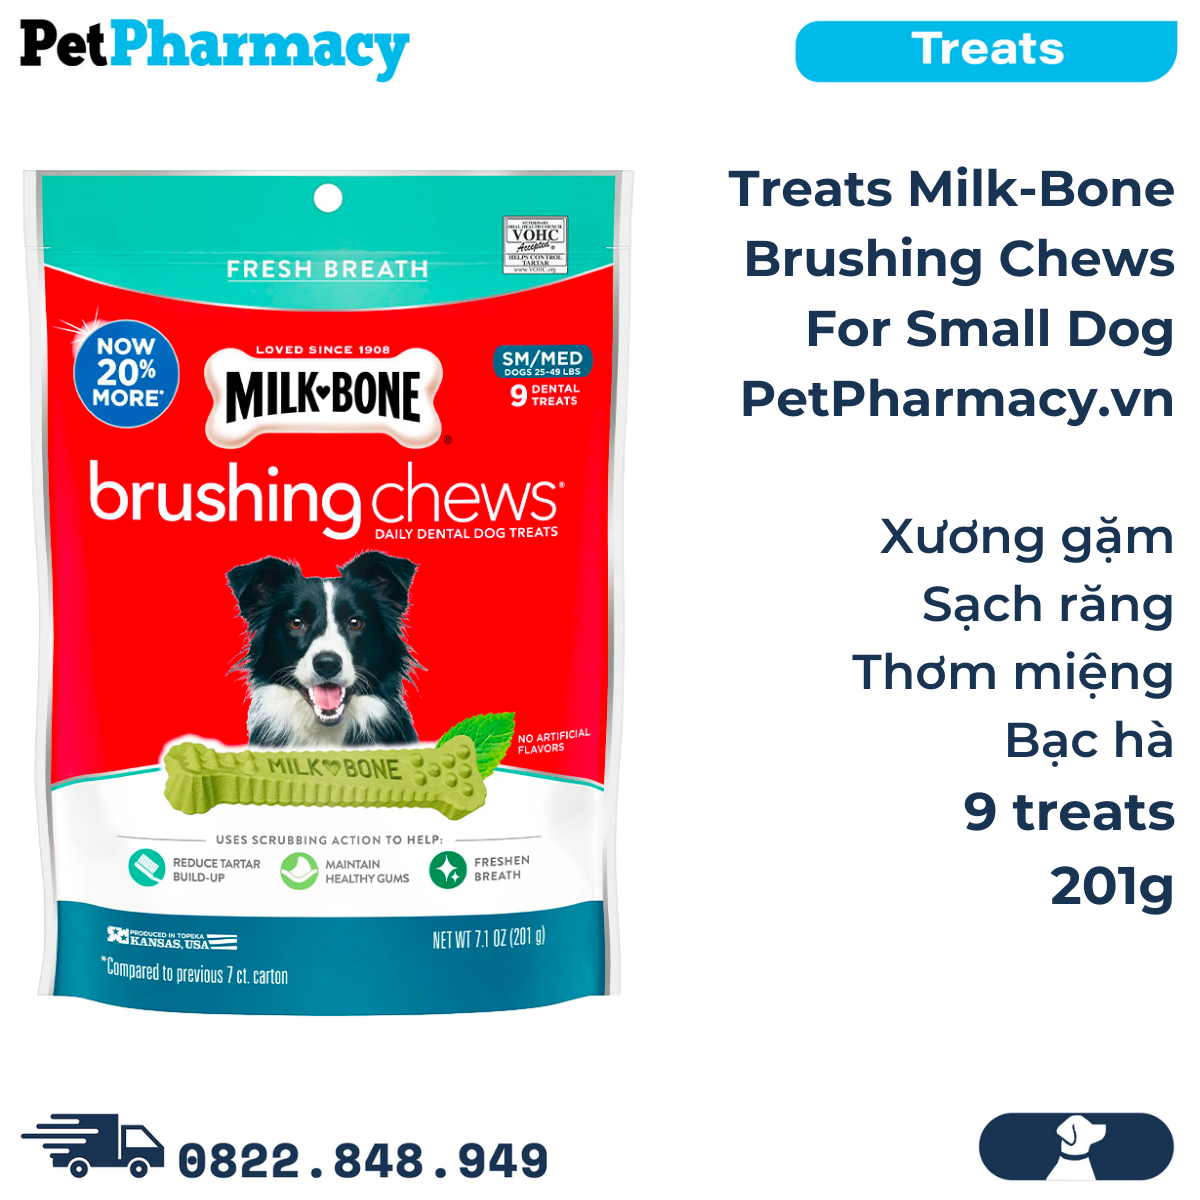 Treats Milk-Bone Brushing Chews 201g - 9 treats